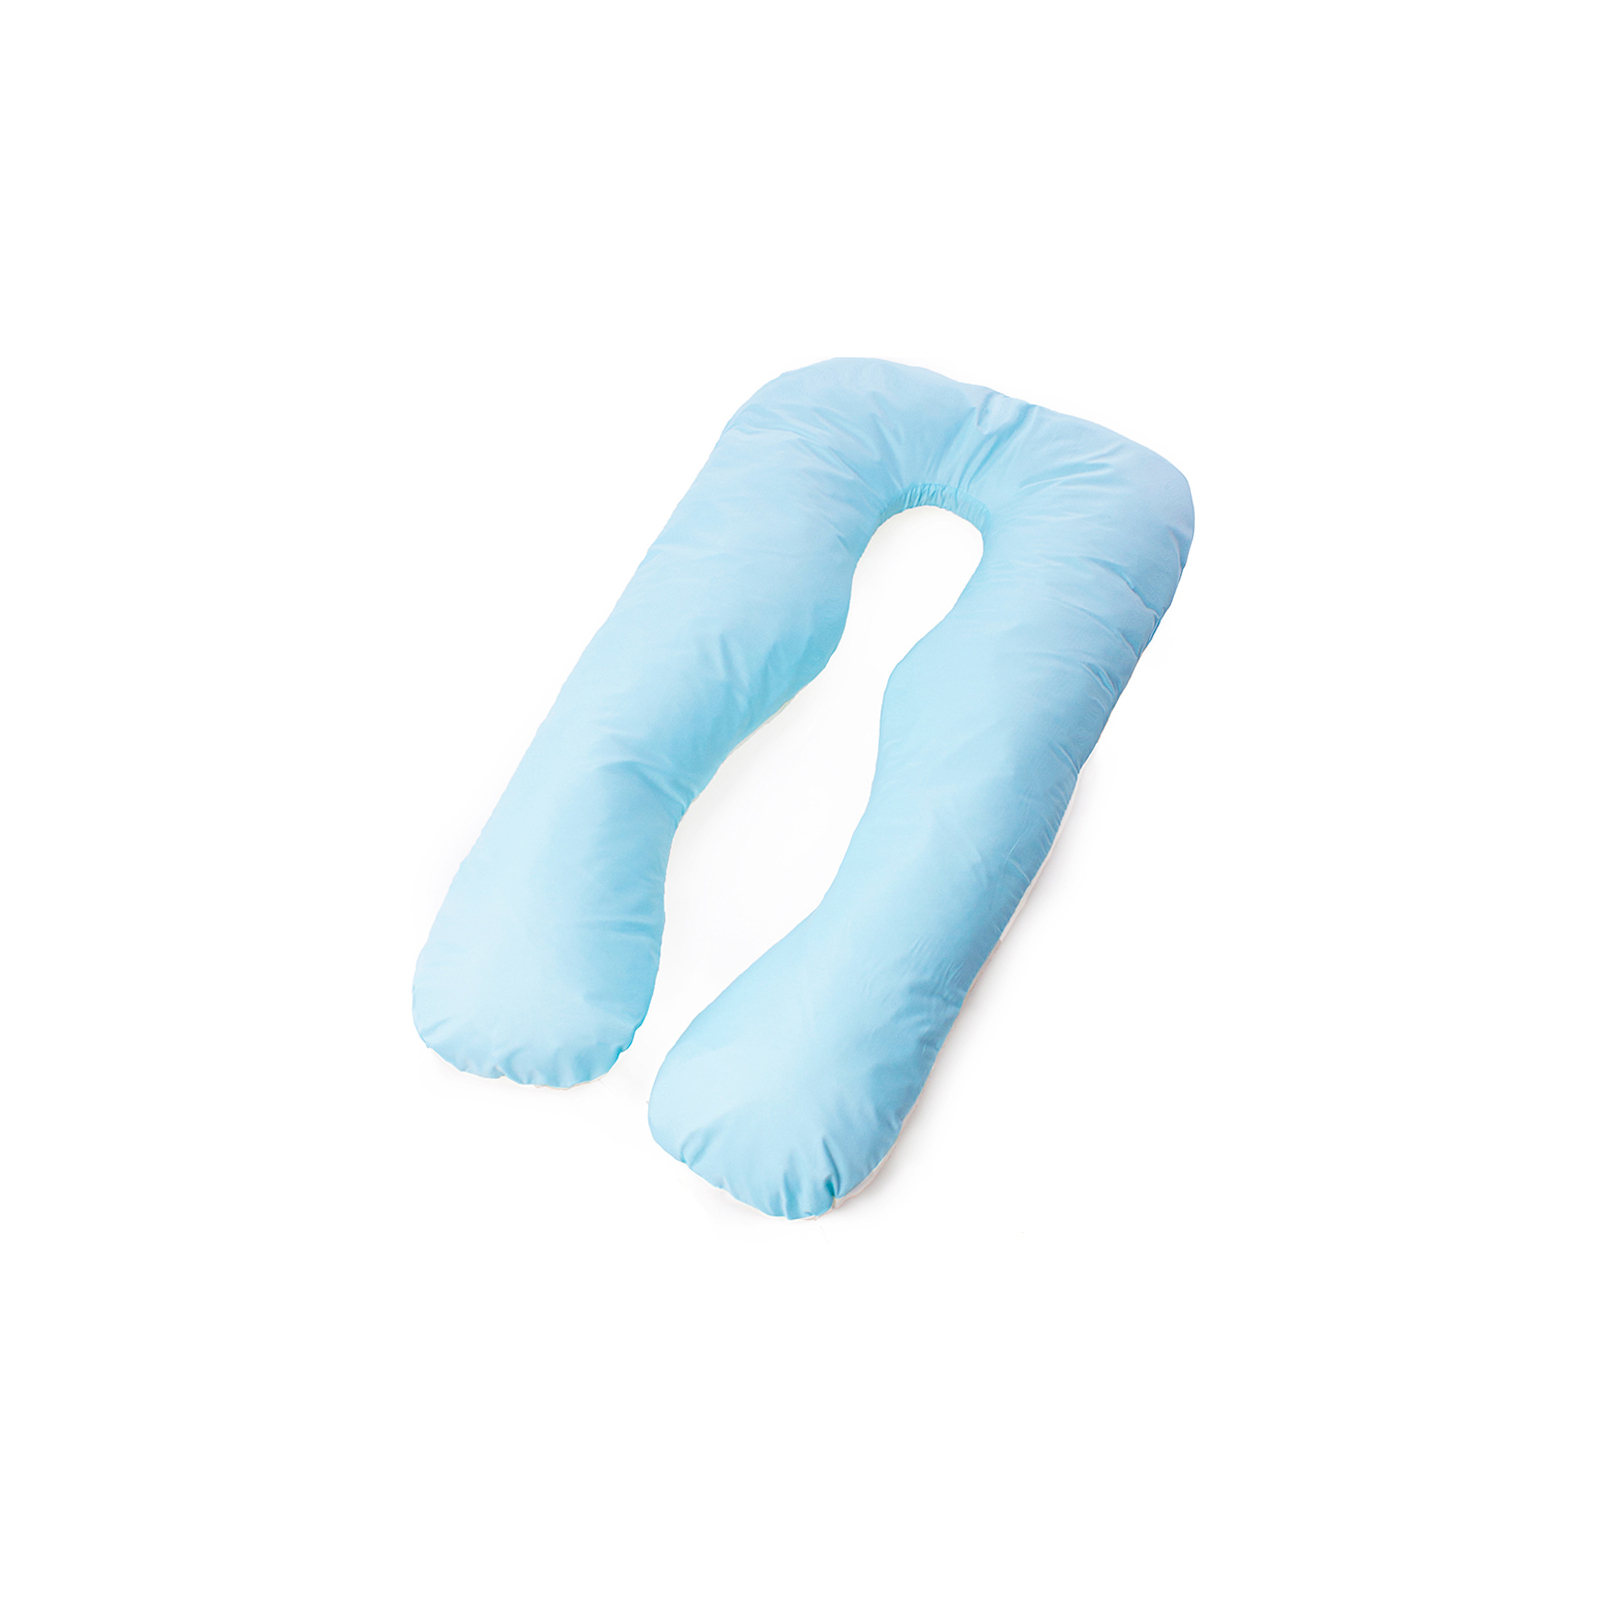 Подушка MirSon для беременных и отдыха Eco Line №8013 U-образная Blue (2200006178378)